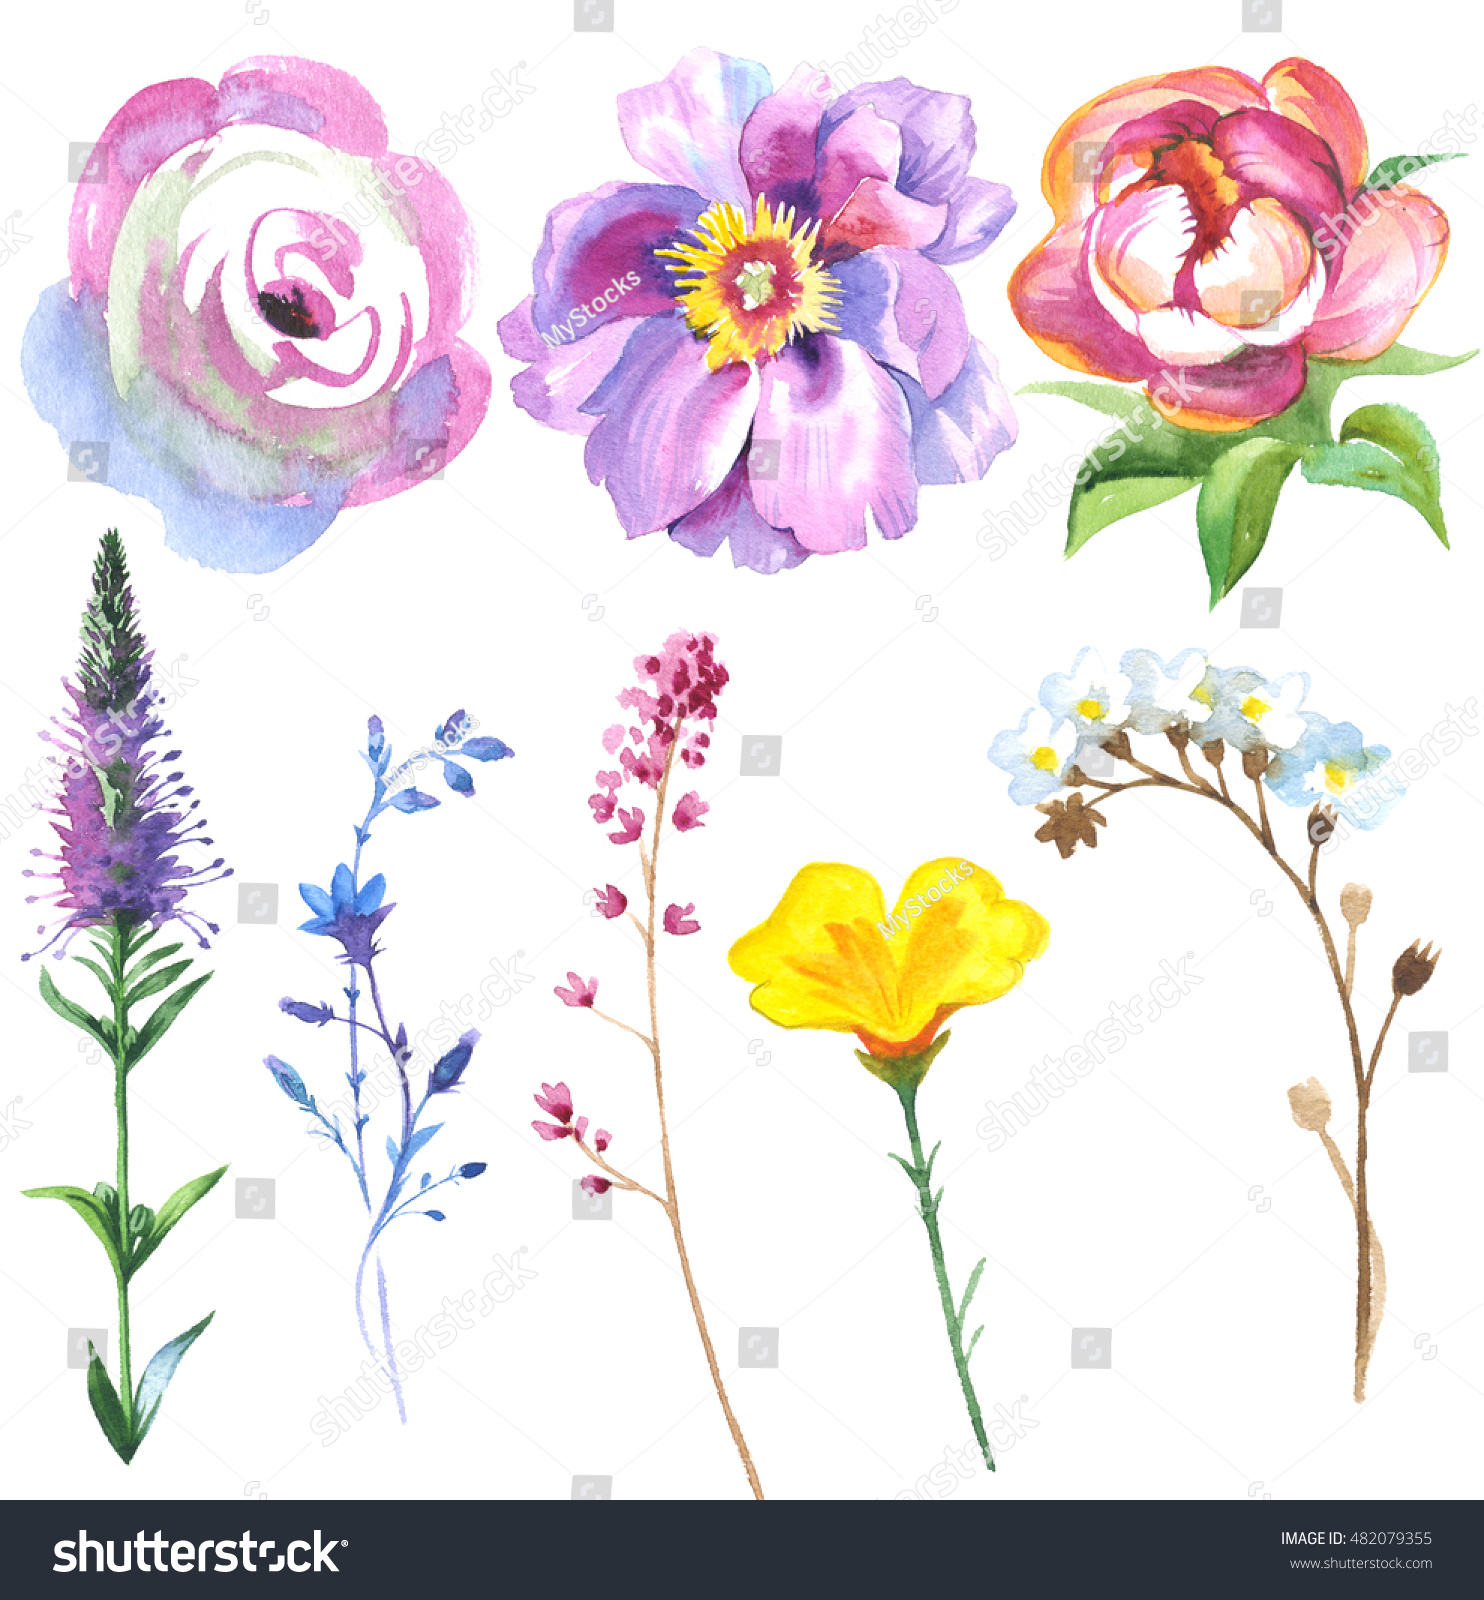 山の花は 牧草地 デイジー カラ ワックスフラワーの4種類の花で 水彩画をセット アクアレルの野生の花は 背景 テクスチャー パターン 枠 縁取り タトゥーに使用できます のイラスト素材 Shutterstock